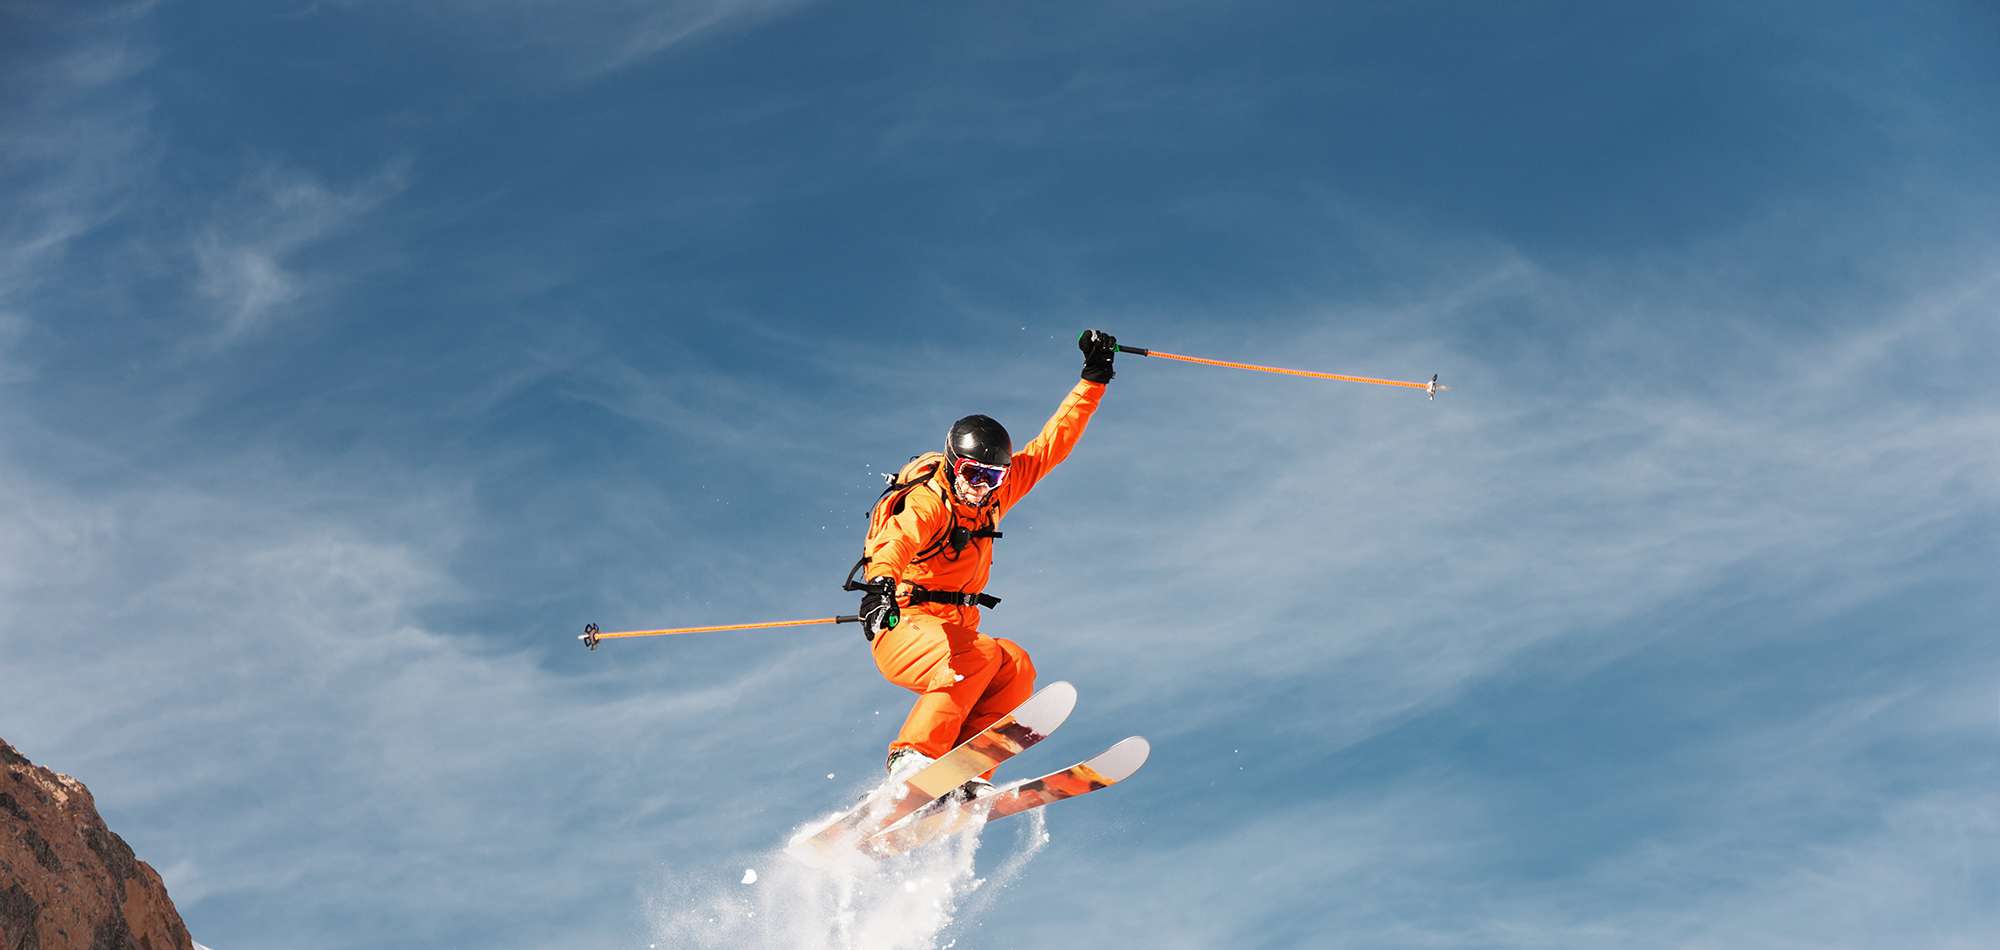 Skiversicherung: Person springt auf Skiern in die Luft